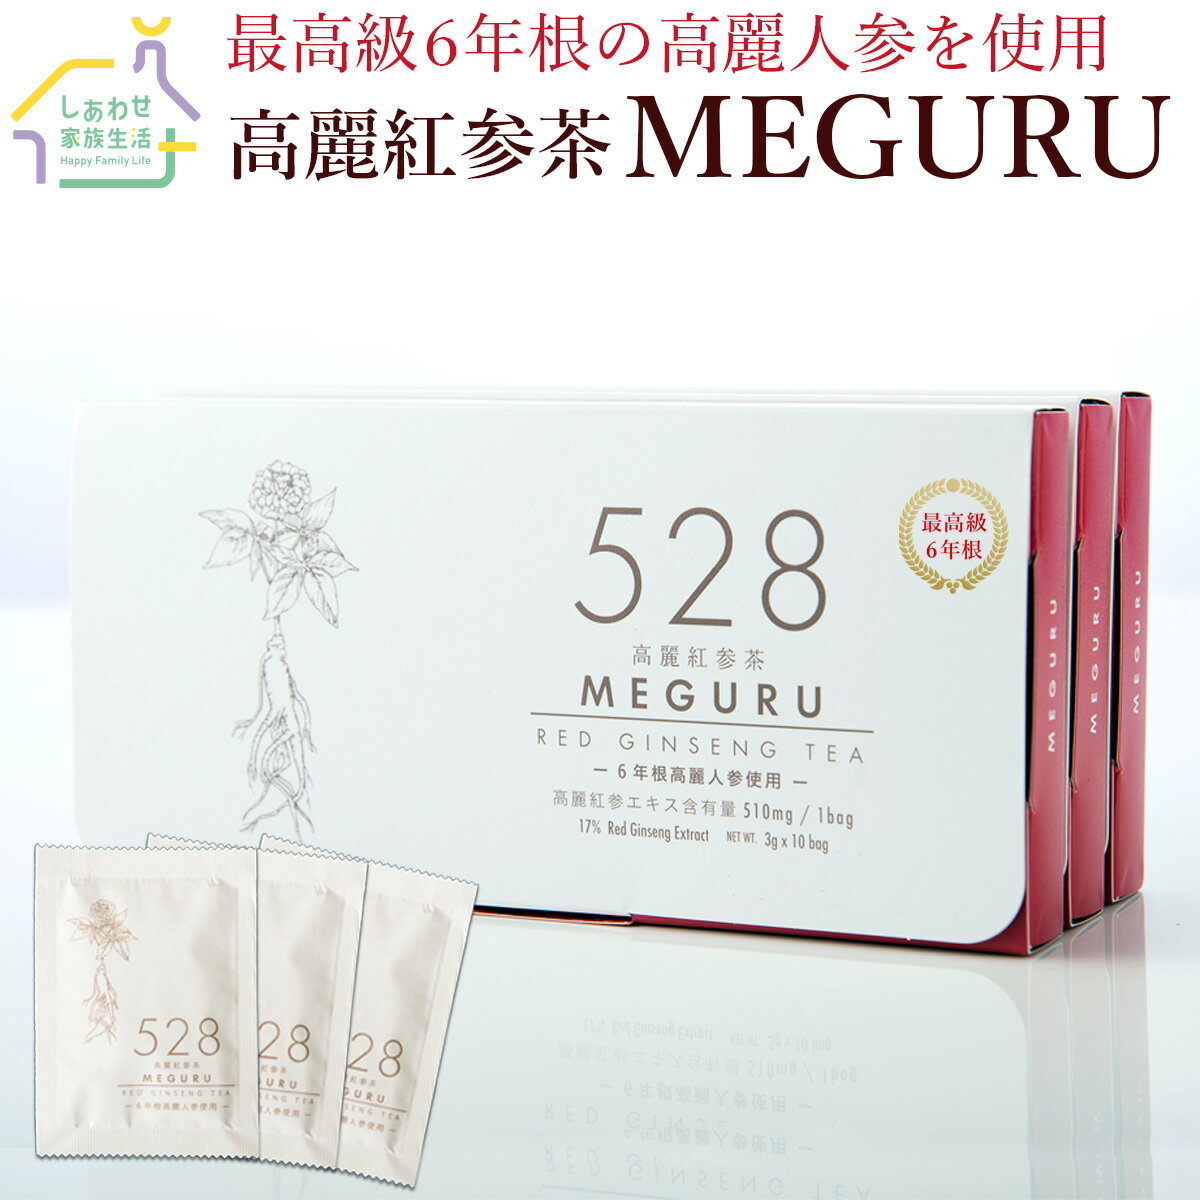 528高麗紅参茶 MEGURU 1箱30包 高麗...の商品画像